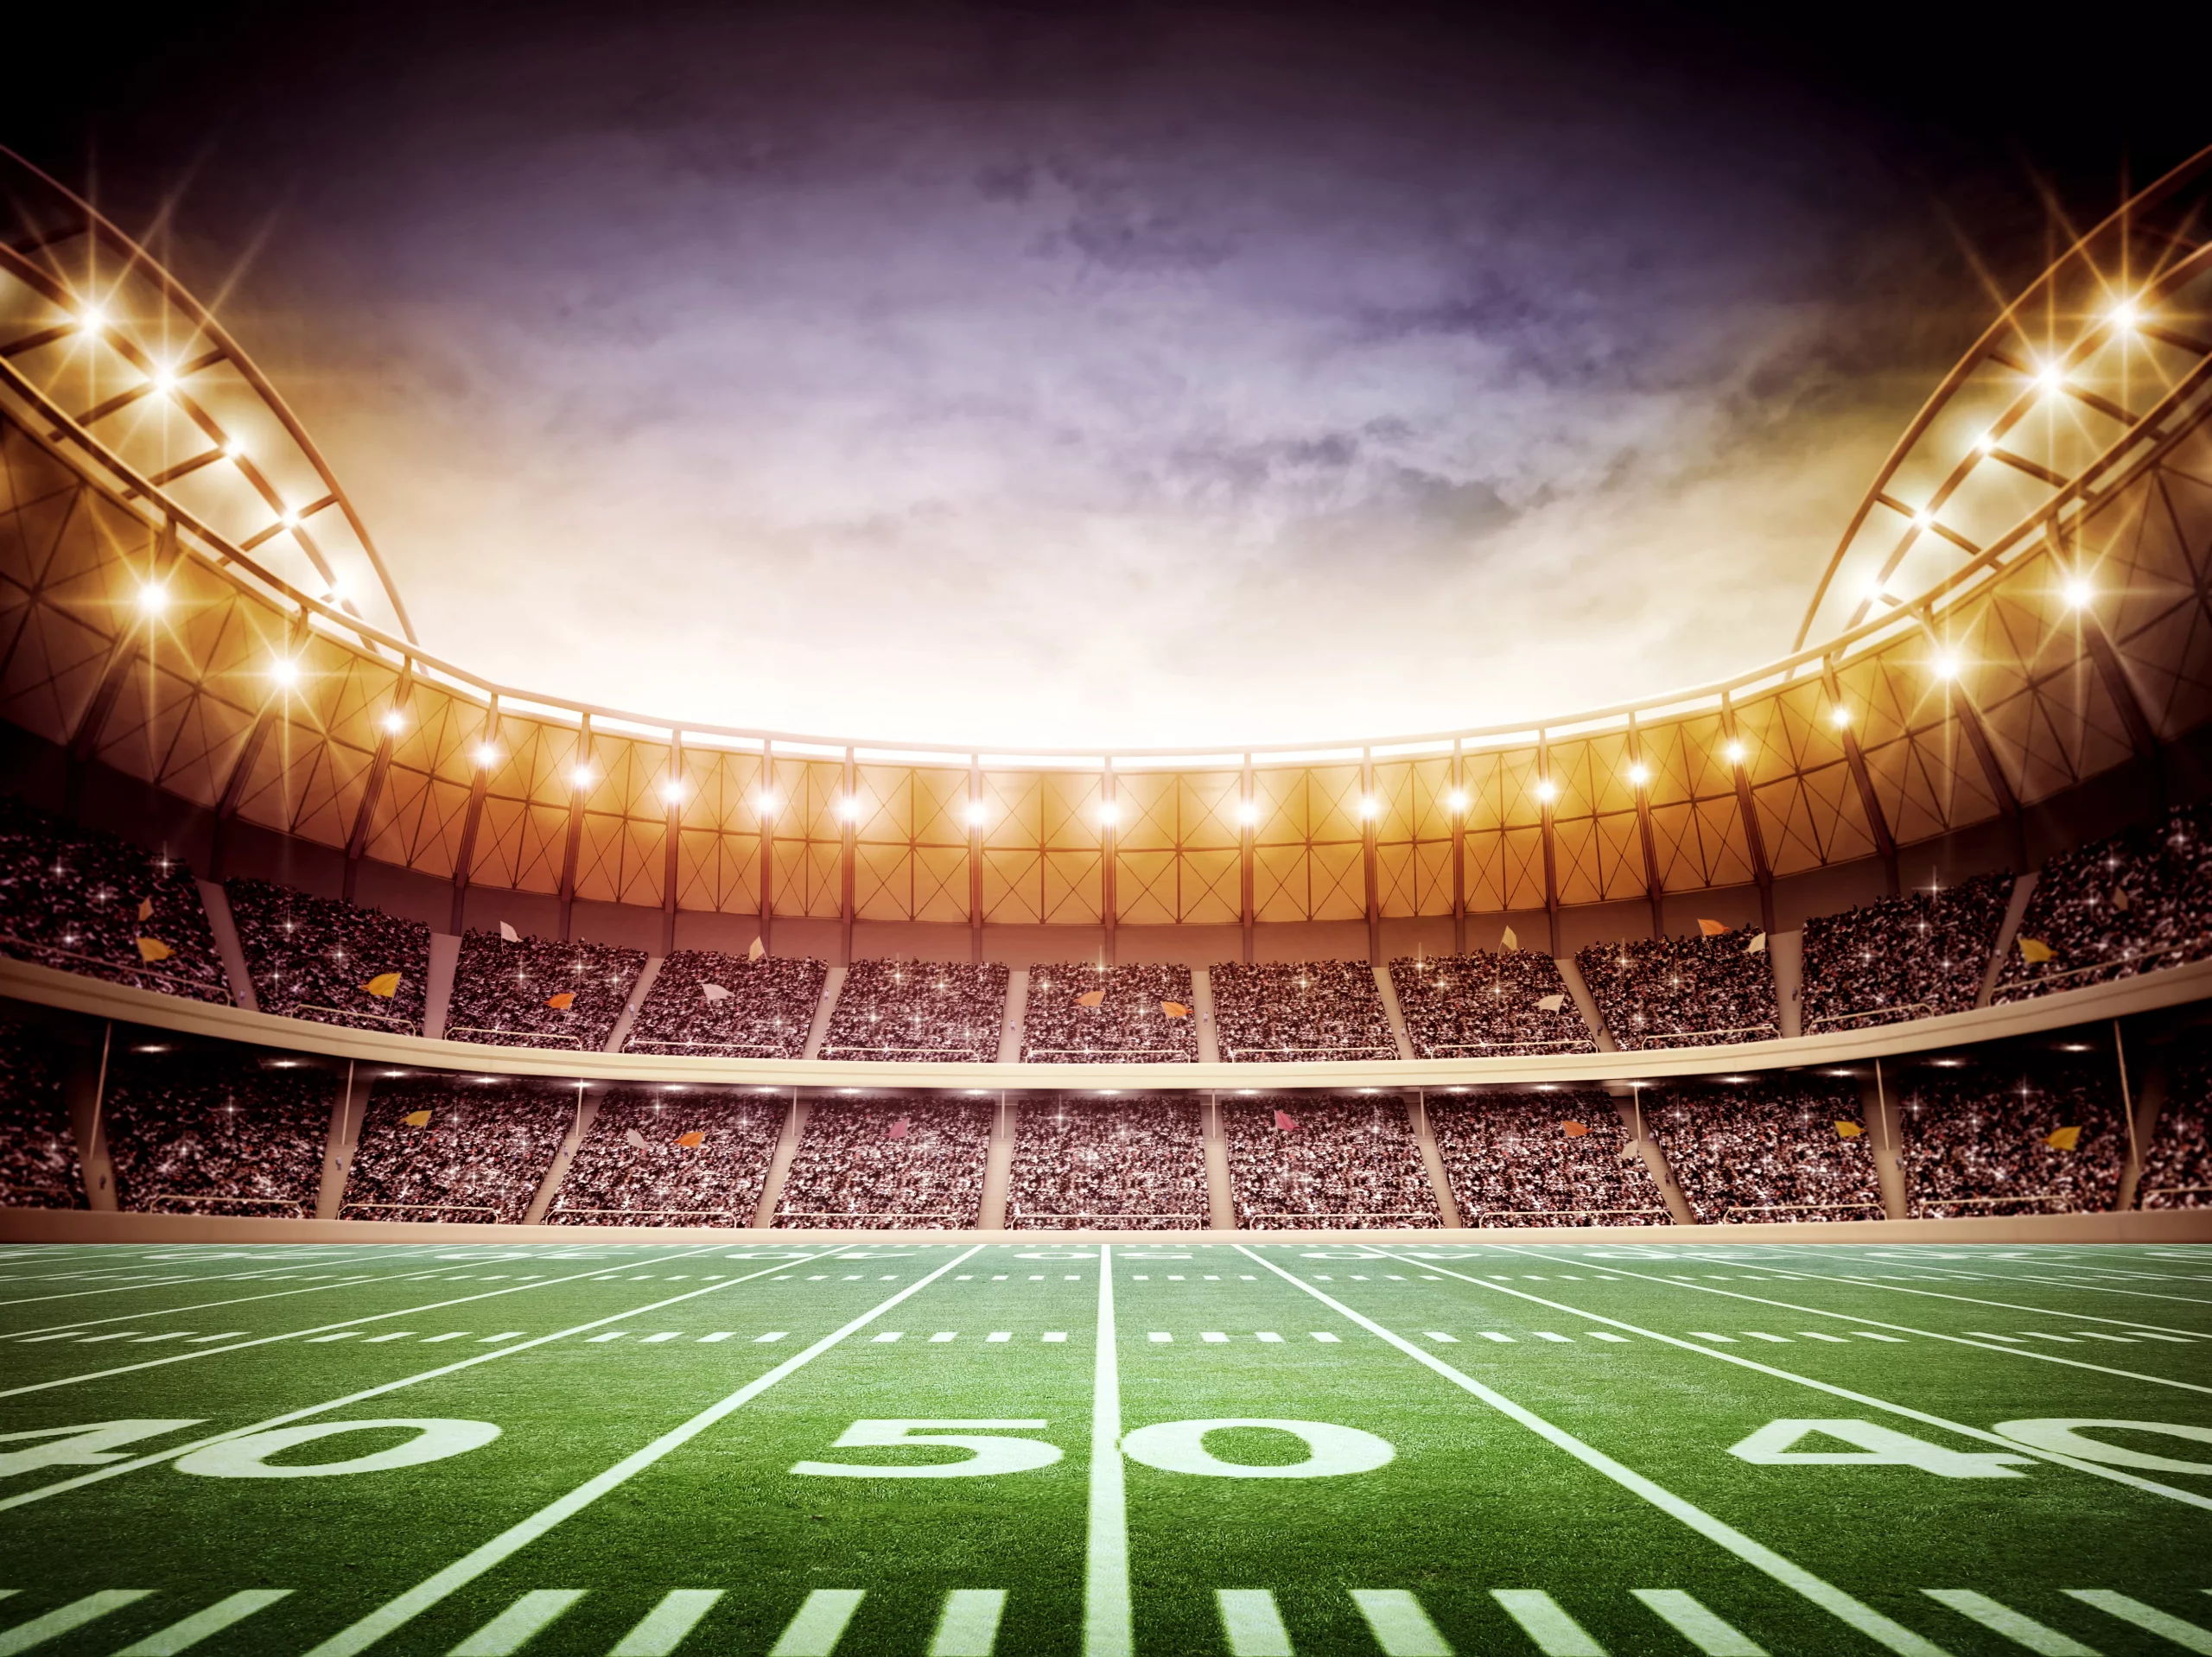 FootballR - NFL Spielplan - Championship Games - DAZN NFL Programm - Ein American-Football-Stadion bei Nacht, in dem ein NFL-Spiel stattfindet.